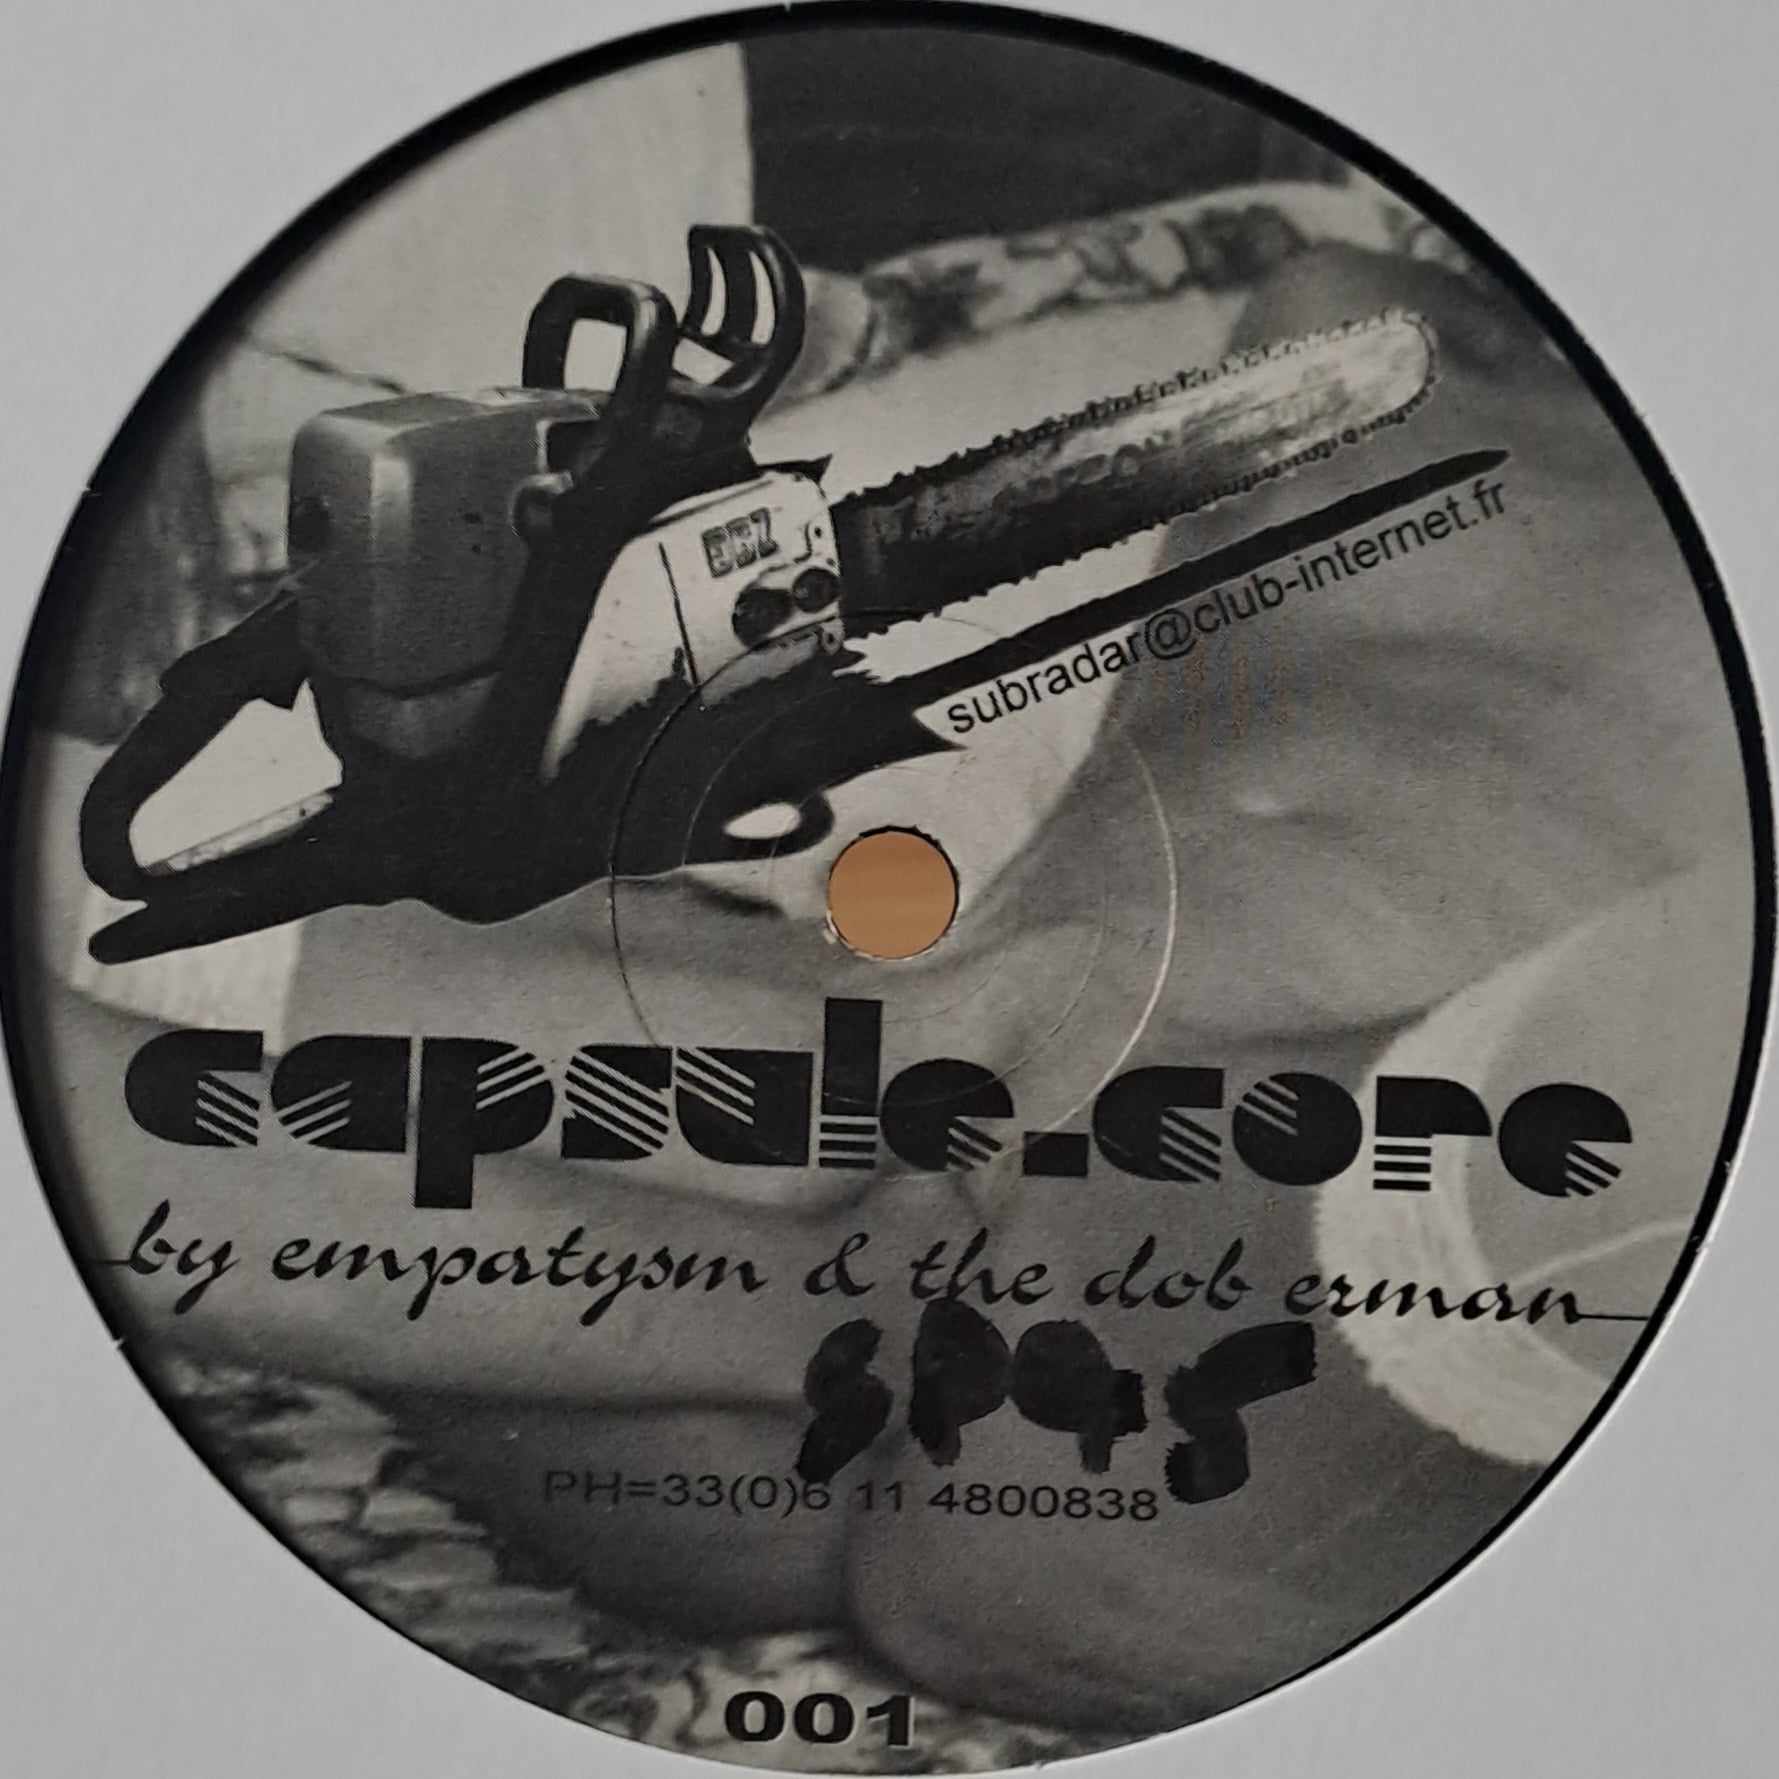 Capsule Core 01 - vinyle hardcore